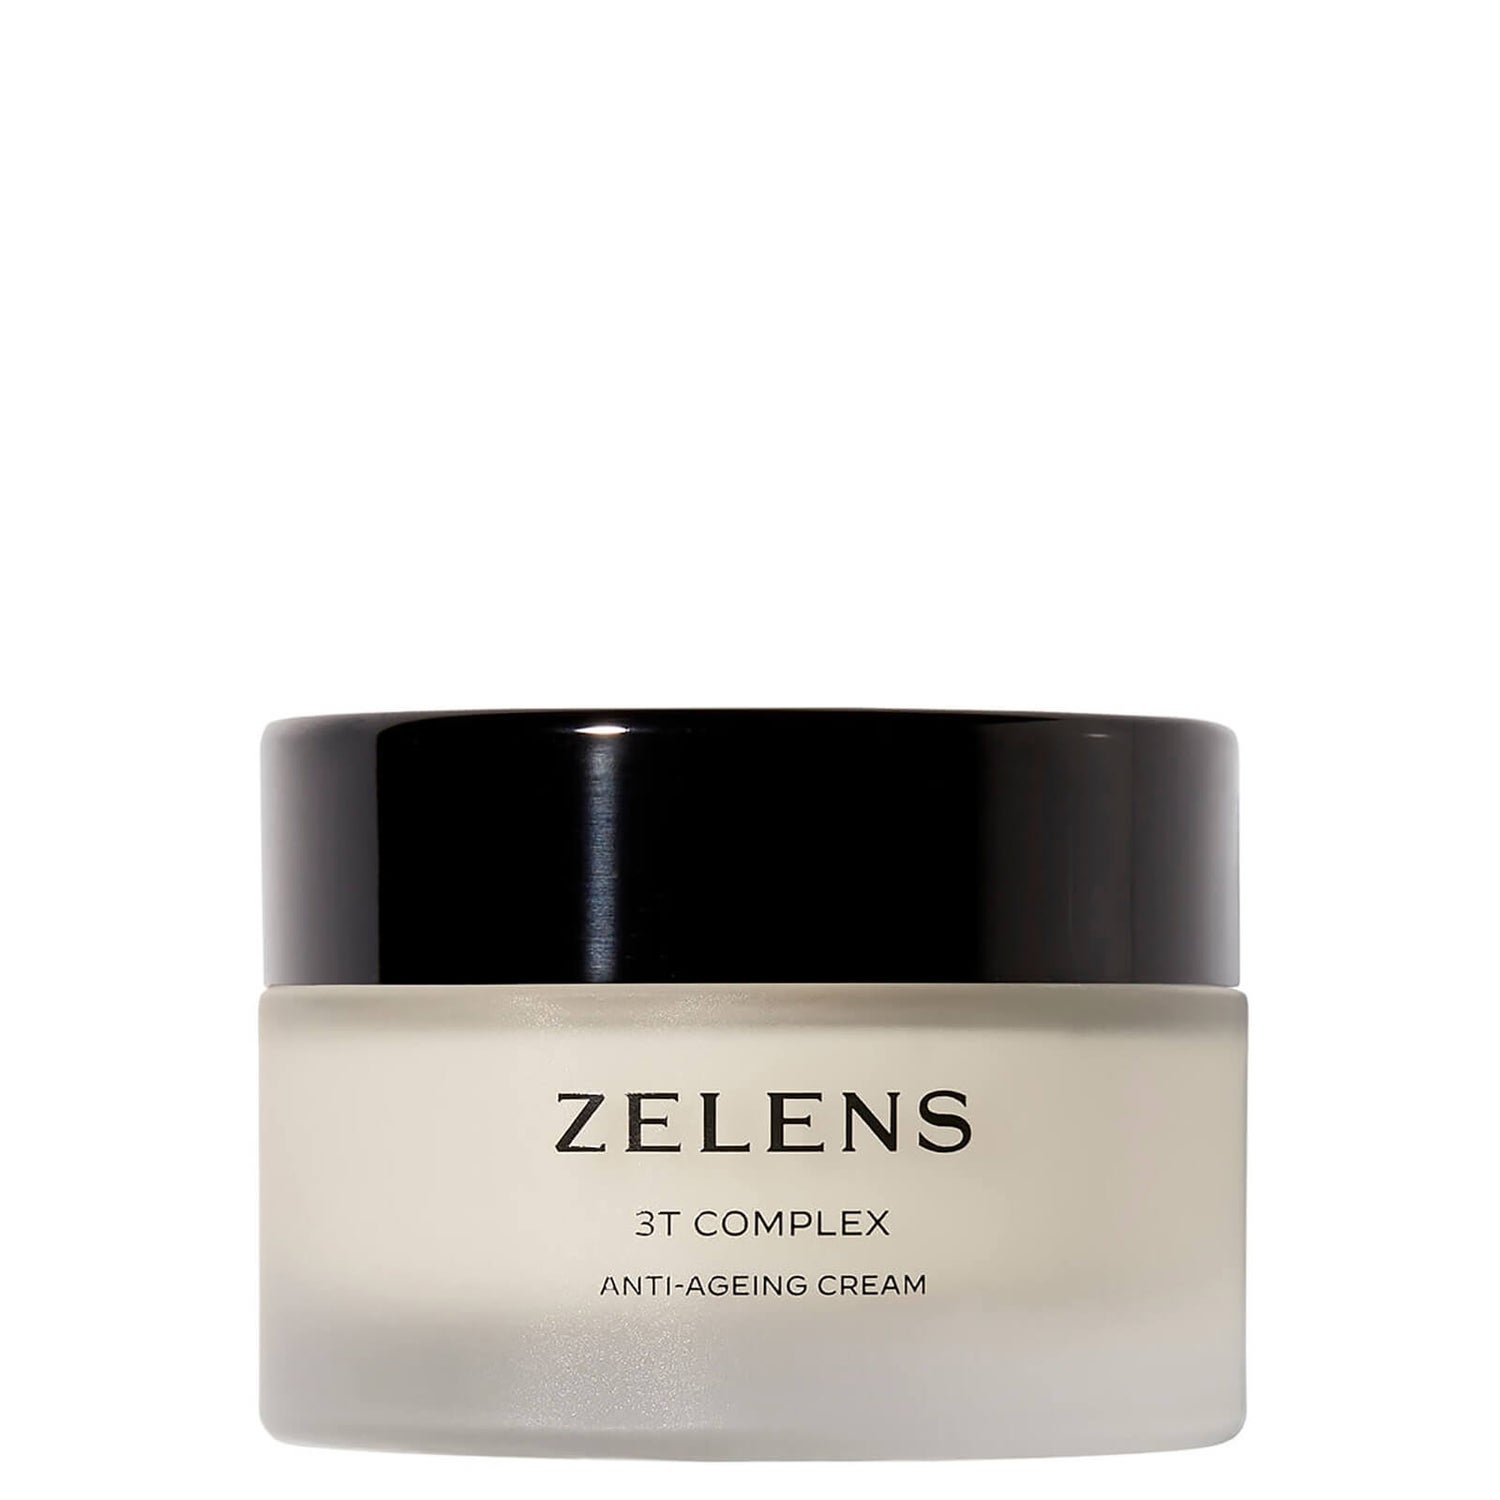 Zelens 3T Complex Crème anti-âge 50ml